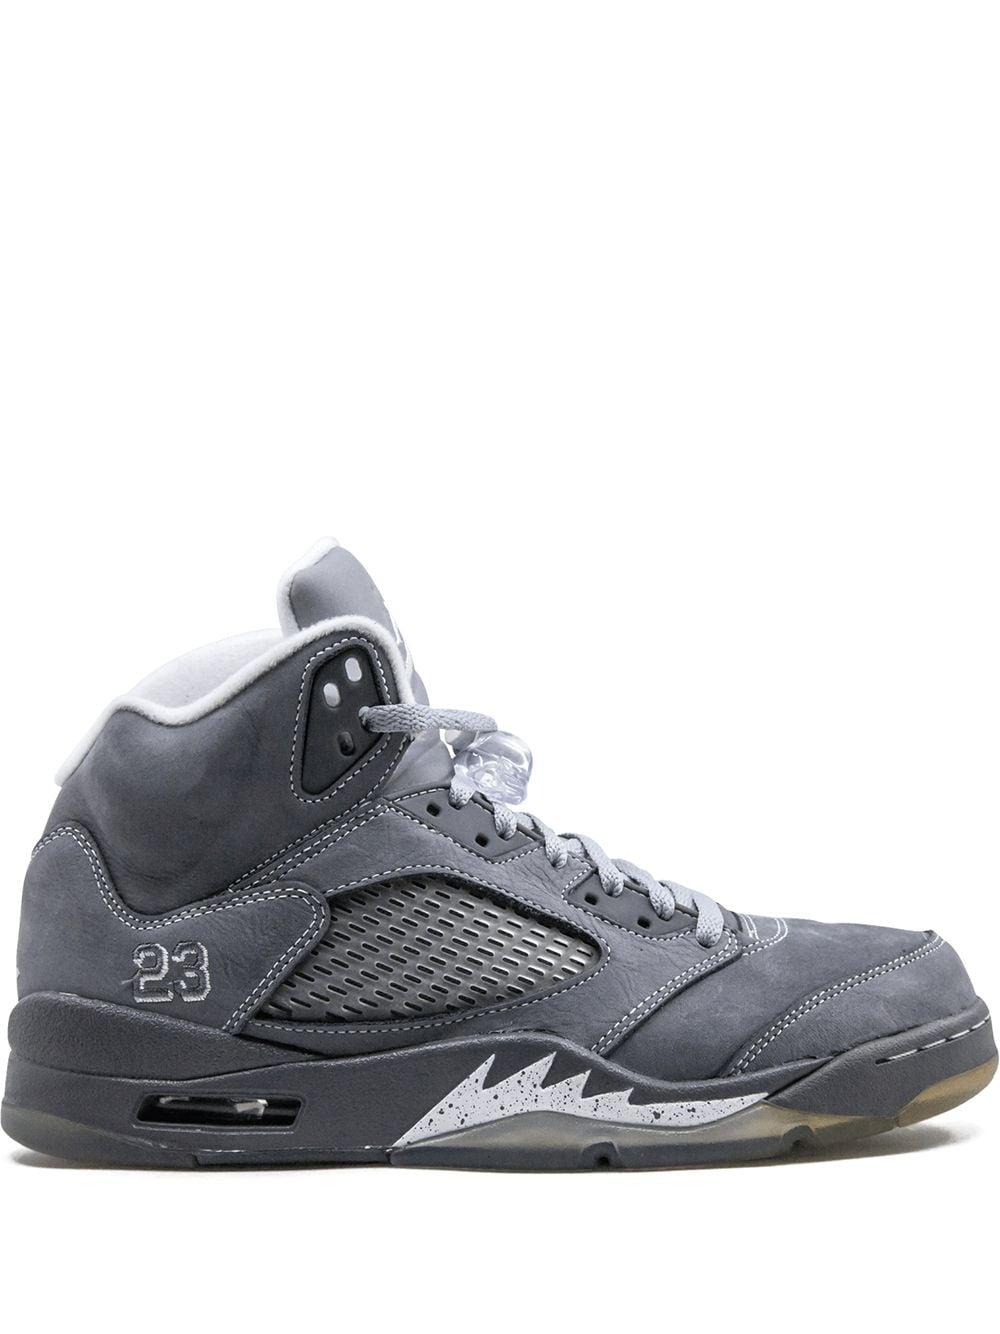 Air Jordan Nike AJ 5 V Retro Wolf Grey 